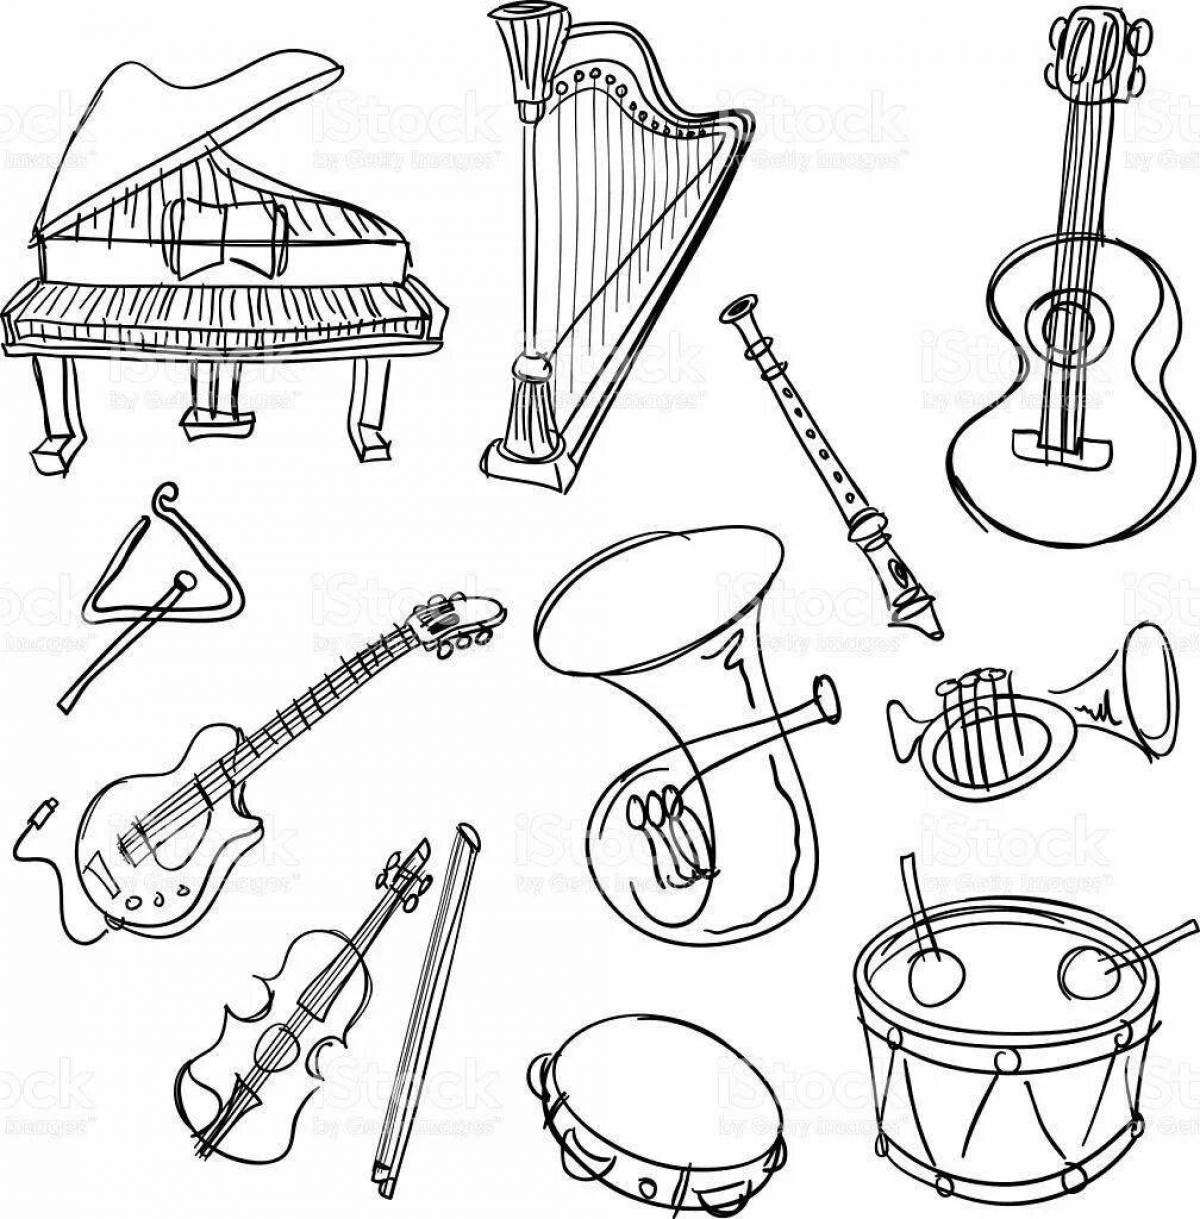 Музыкальные инструменты народов рисунки. Музыкальные инструменты рисунки. Раскраска музыкальные инструменты для детей. Инструменты симфонического оркестра для раскрашивания. Рисование музыкальные инструменты.